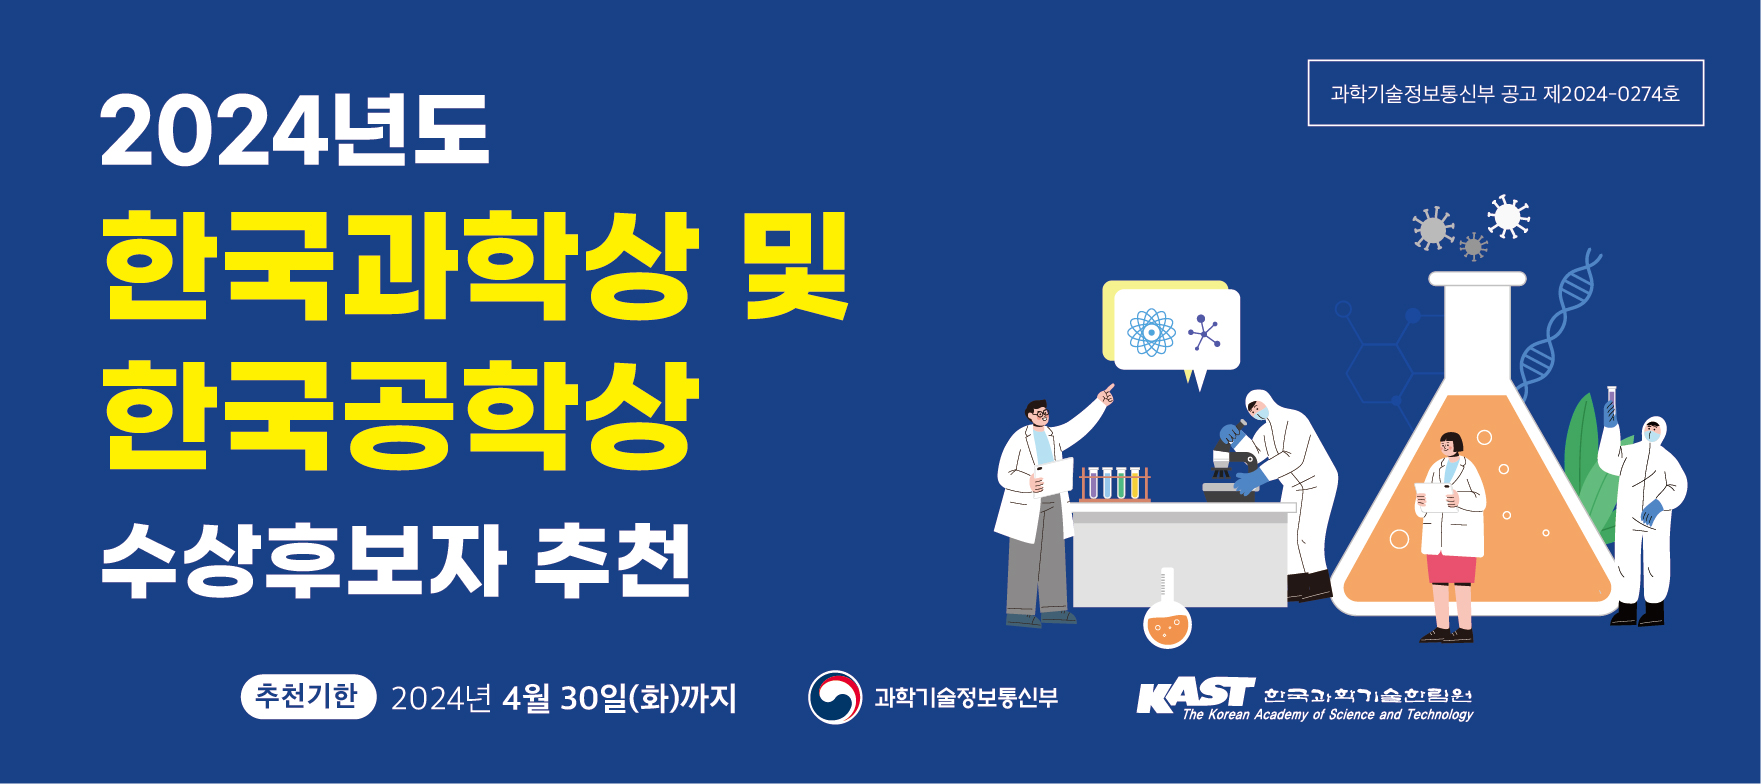 2024년 한국과학상 및 한국공학상(대통령상) 수상후보자 추천 공고